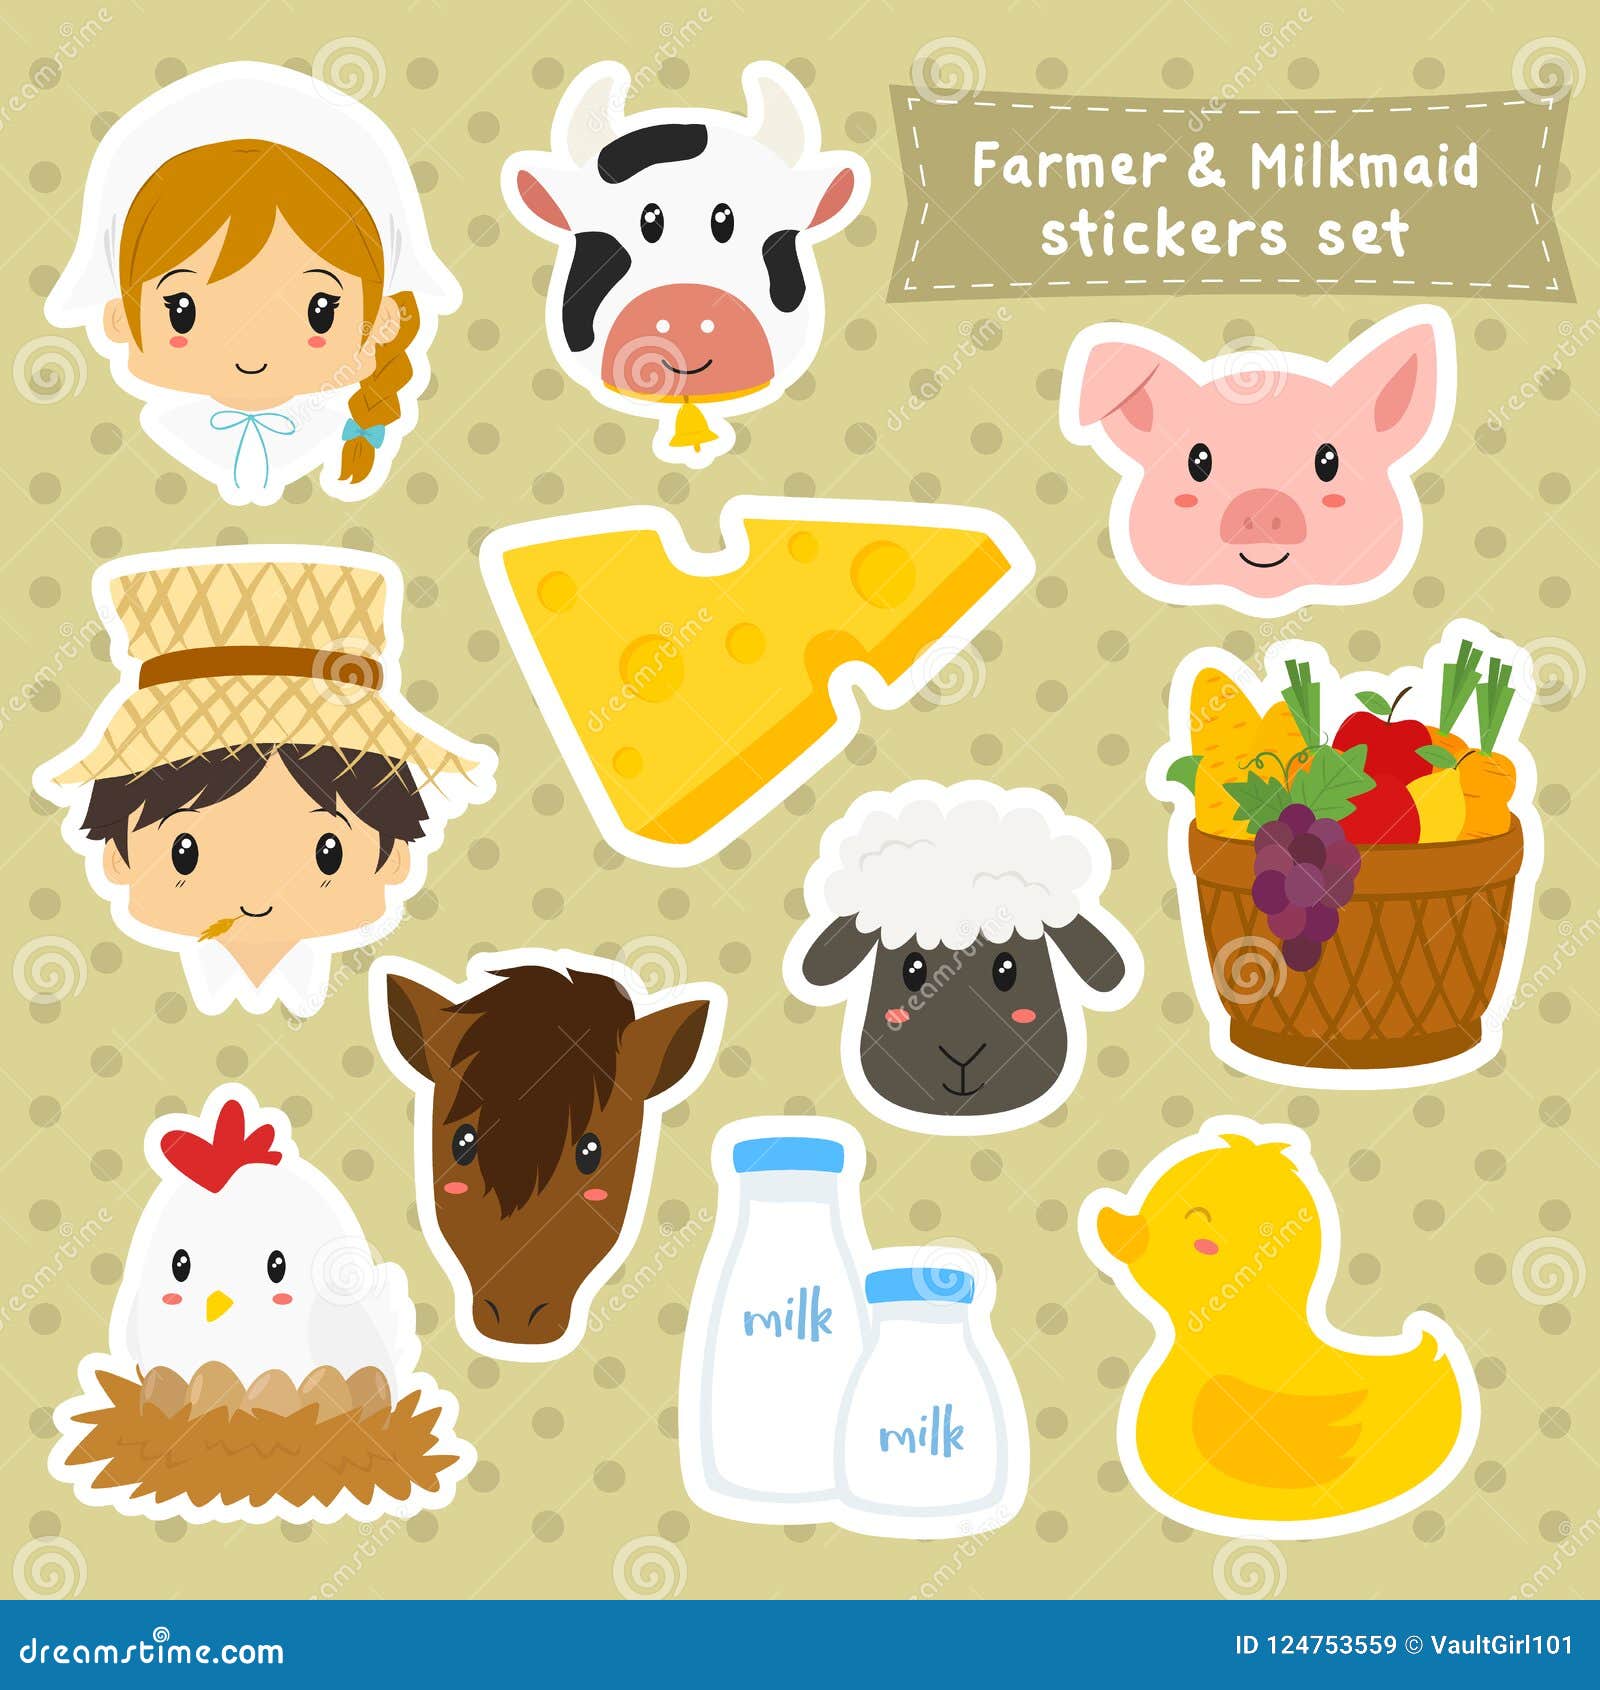 farmer and milkmaid sticker  set